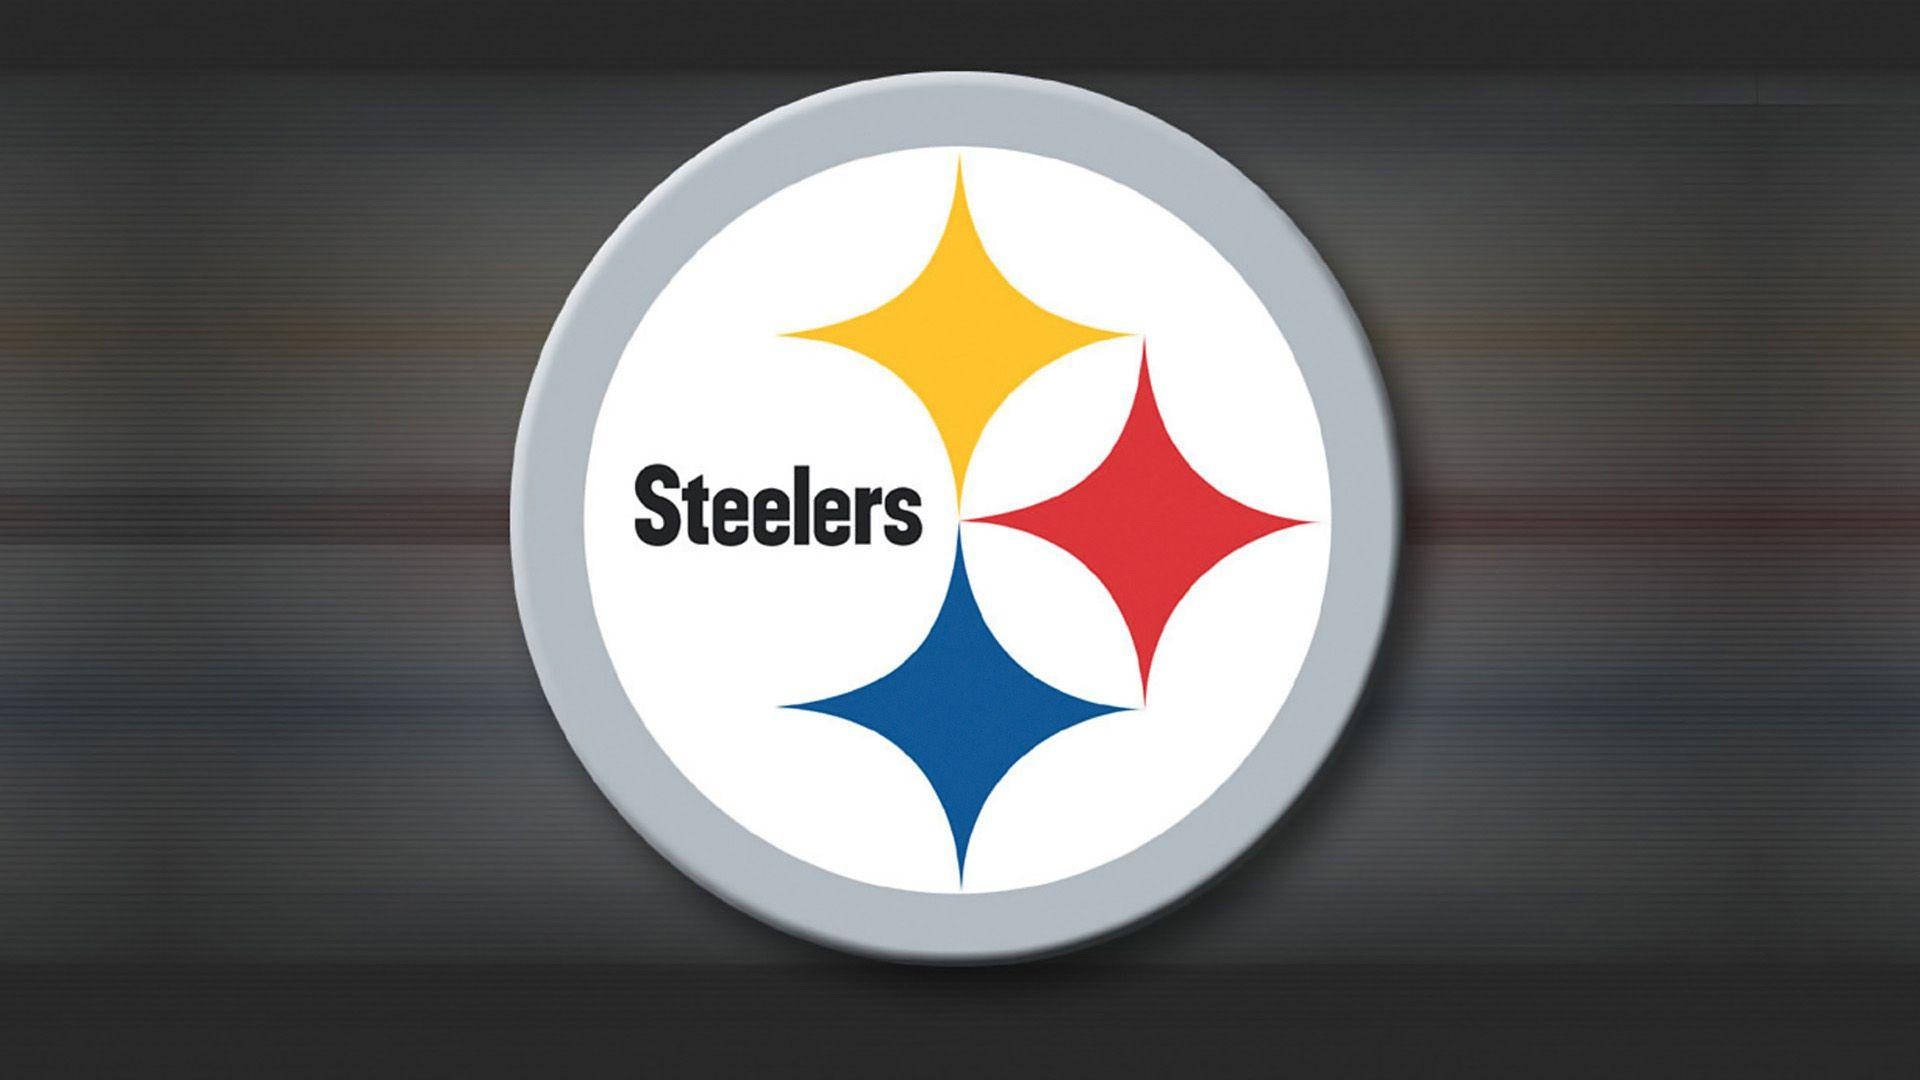 Logotipodel Equipo Pittsburgh Steelers De La Nfl. Fondo de pantalla